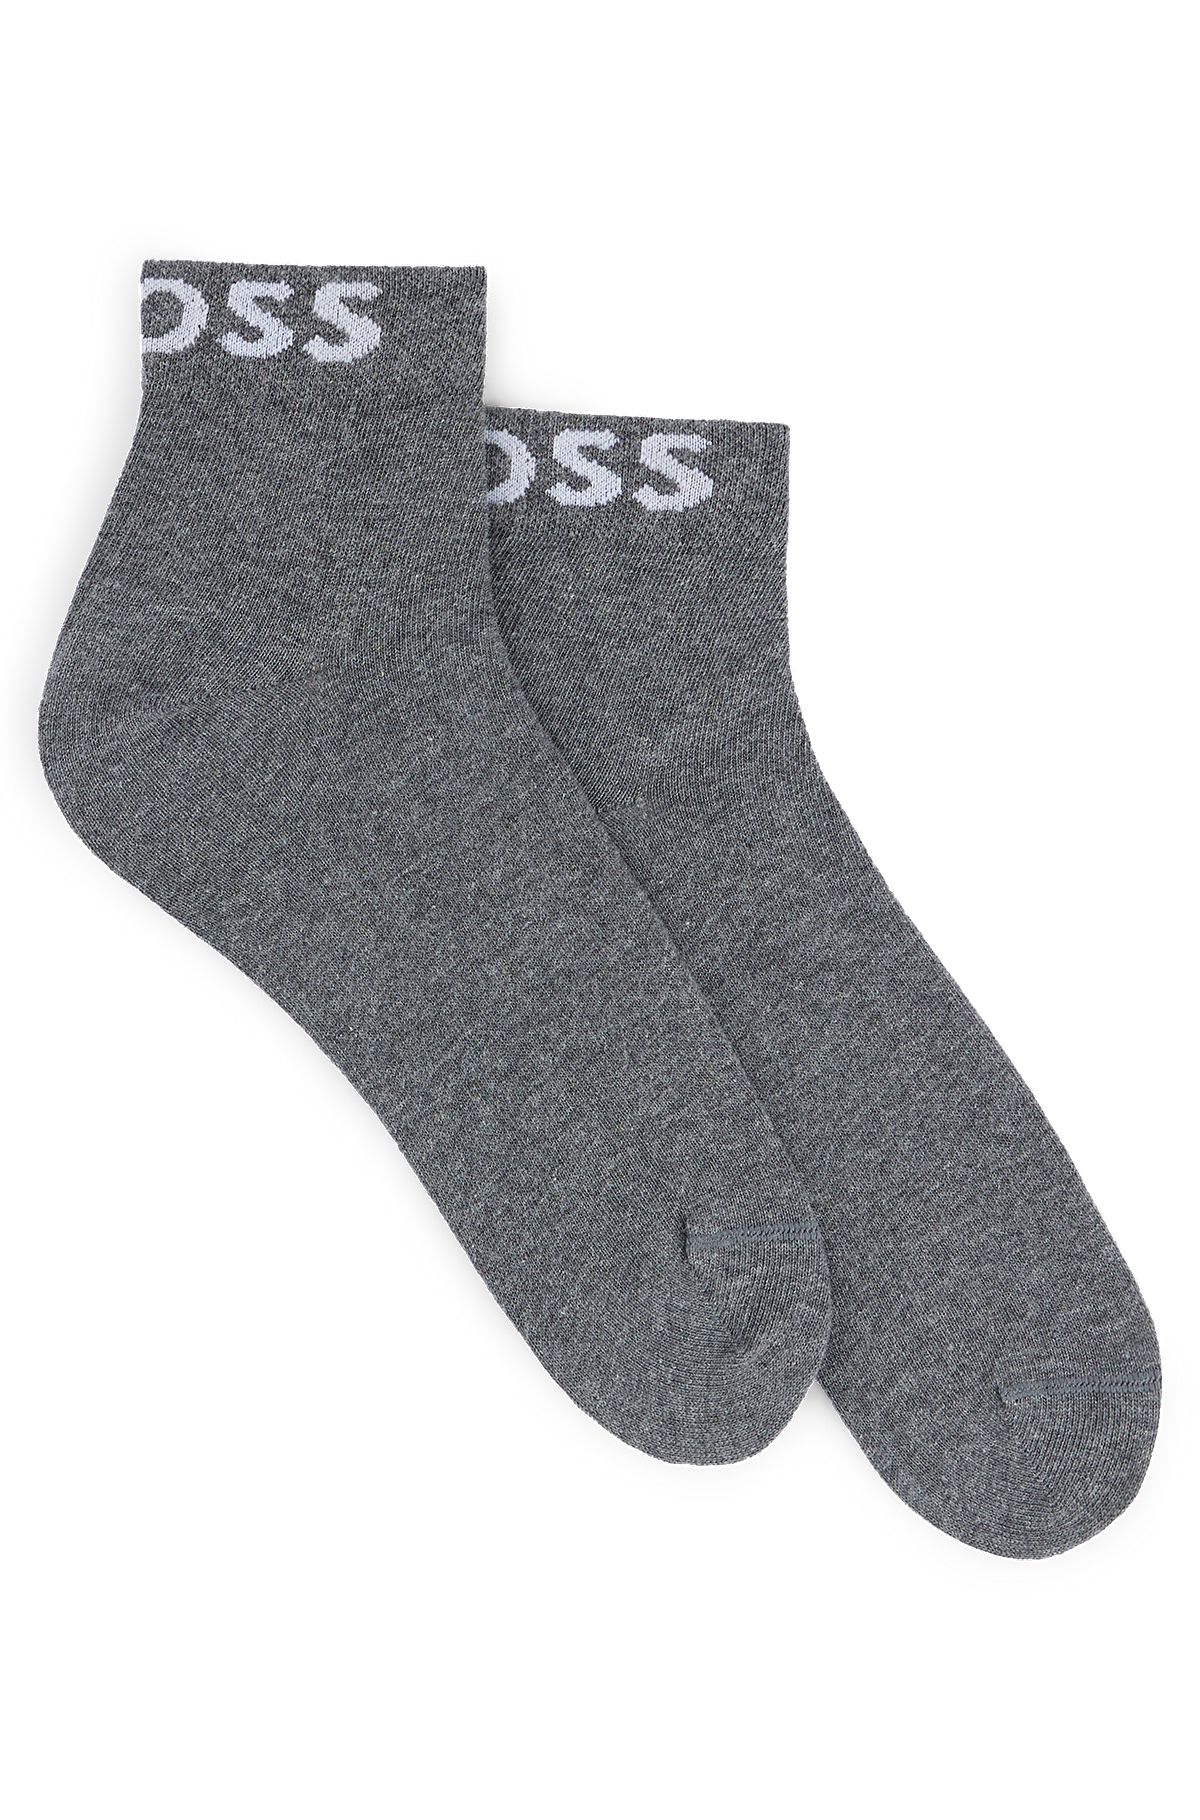 Paquete de 2 pares de calcetines cortos con logos en contraste, Gris